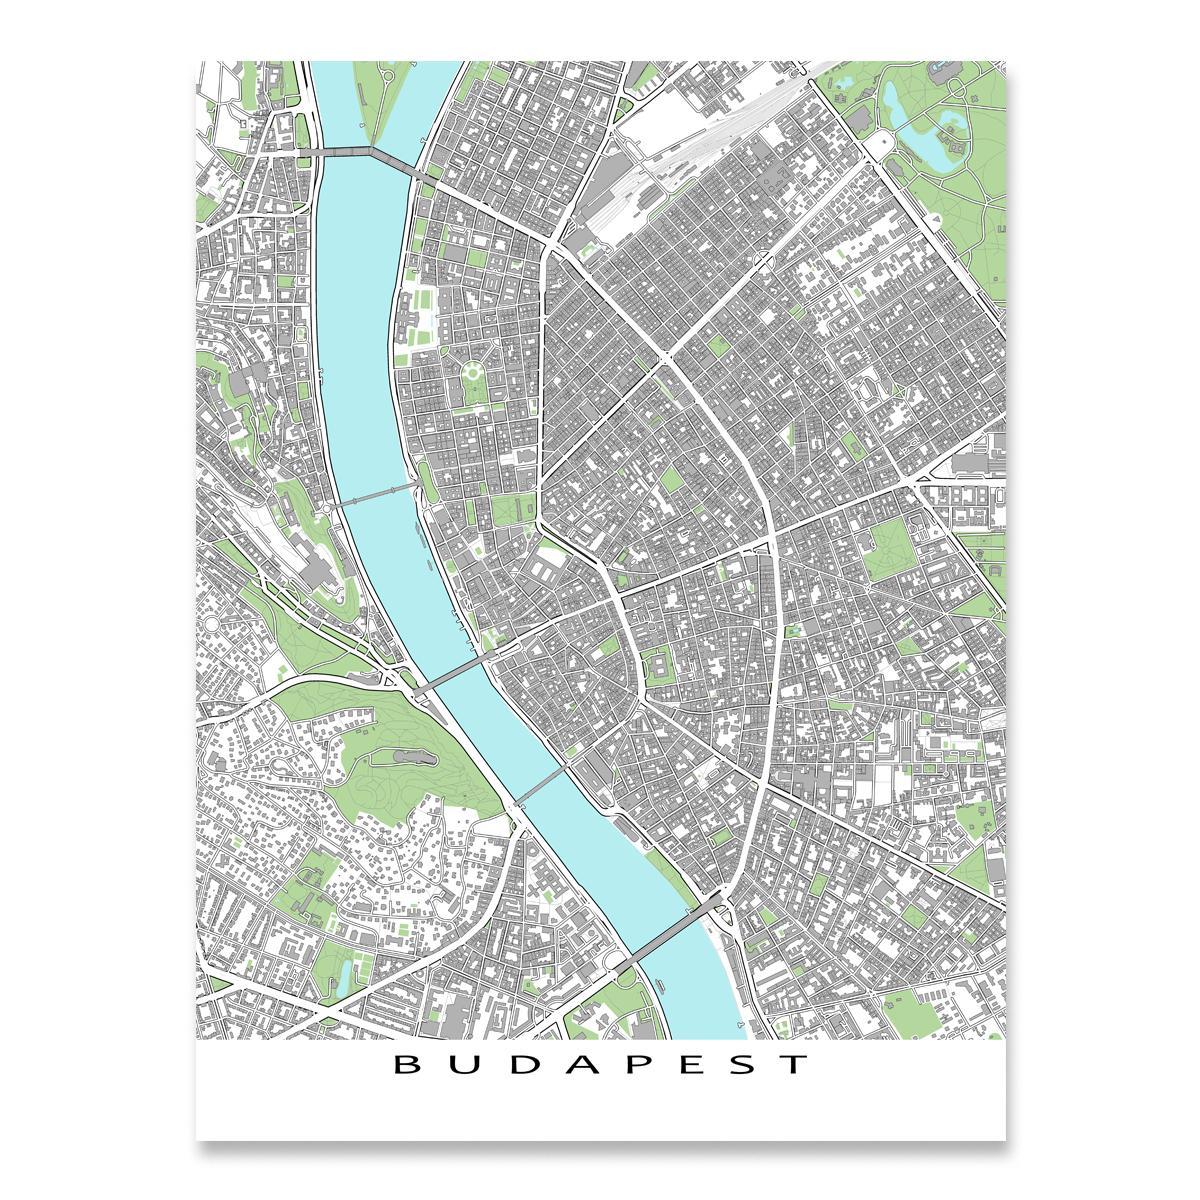 зураг будапешт газрын зураг хэвлэх